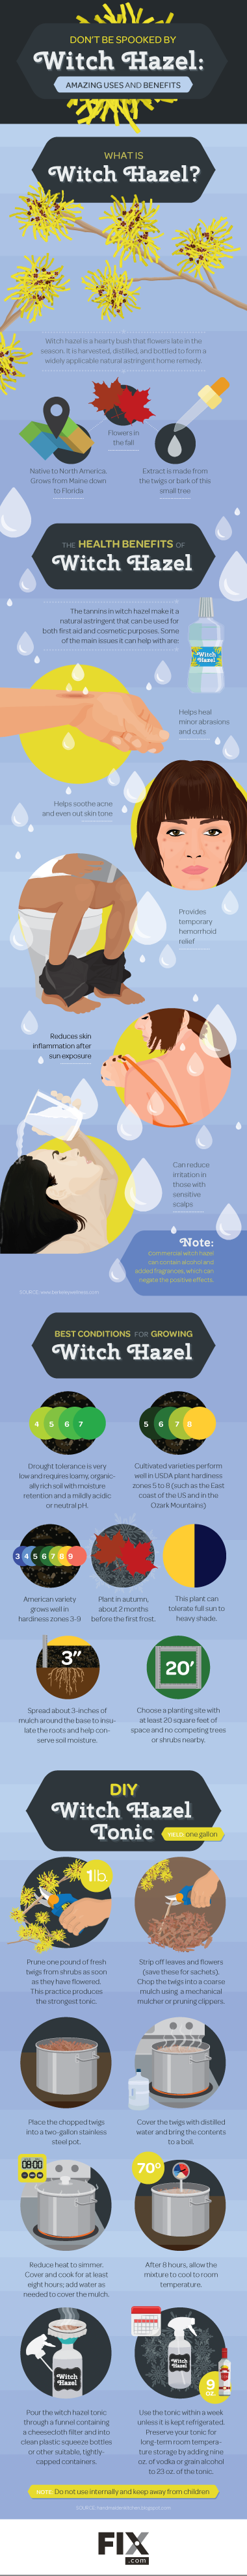 witch-hazel-uses